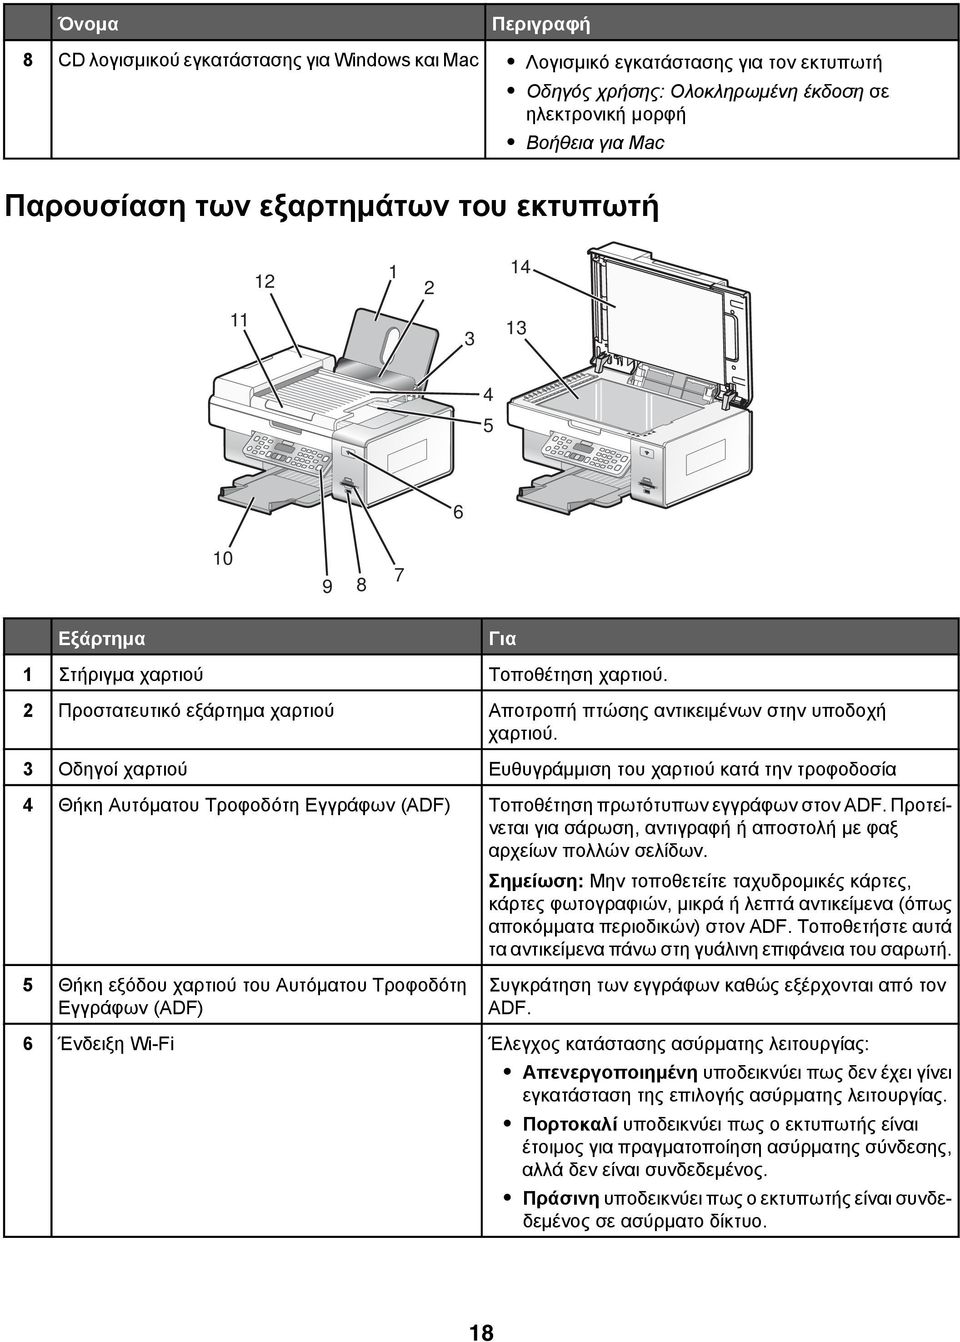 3 Οδηγοί χαρτιού Ευθυγράμμιση του χαρτιού κατά την τροφοδοσία Για 4 Θήκη Αυτόματου Τροφοδότη Εγγράφων (ADF) Τοποθέτηση πρωτότυπων εγγράφων στον ADF.